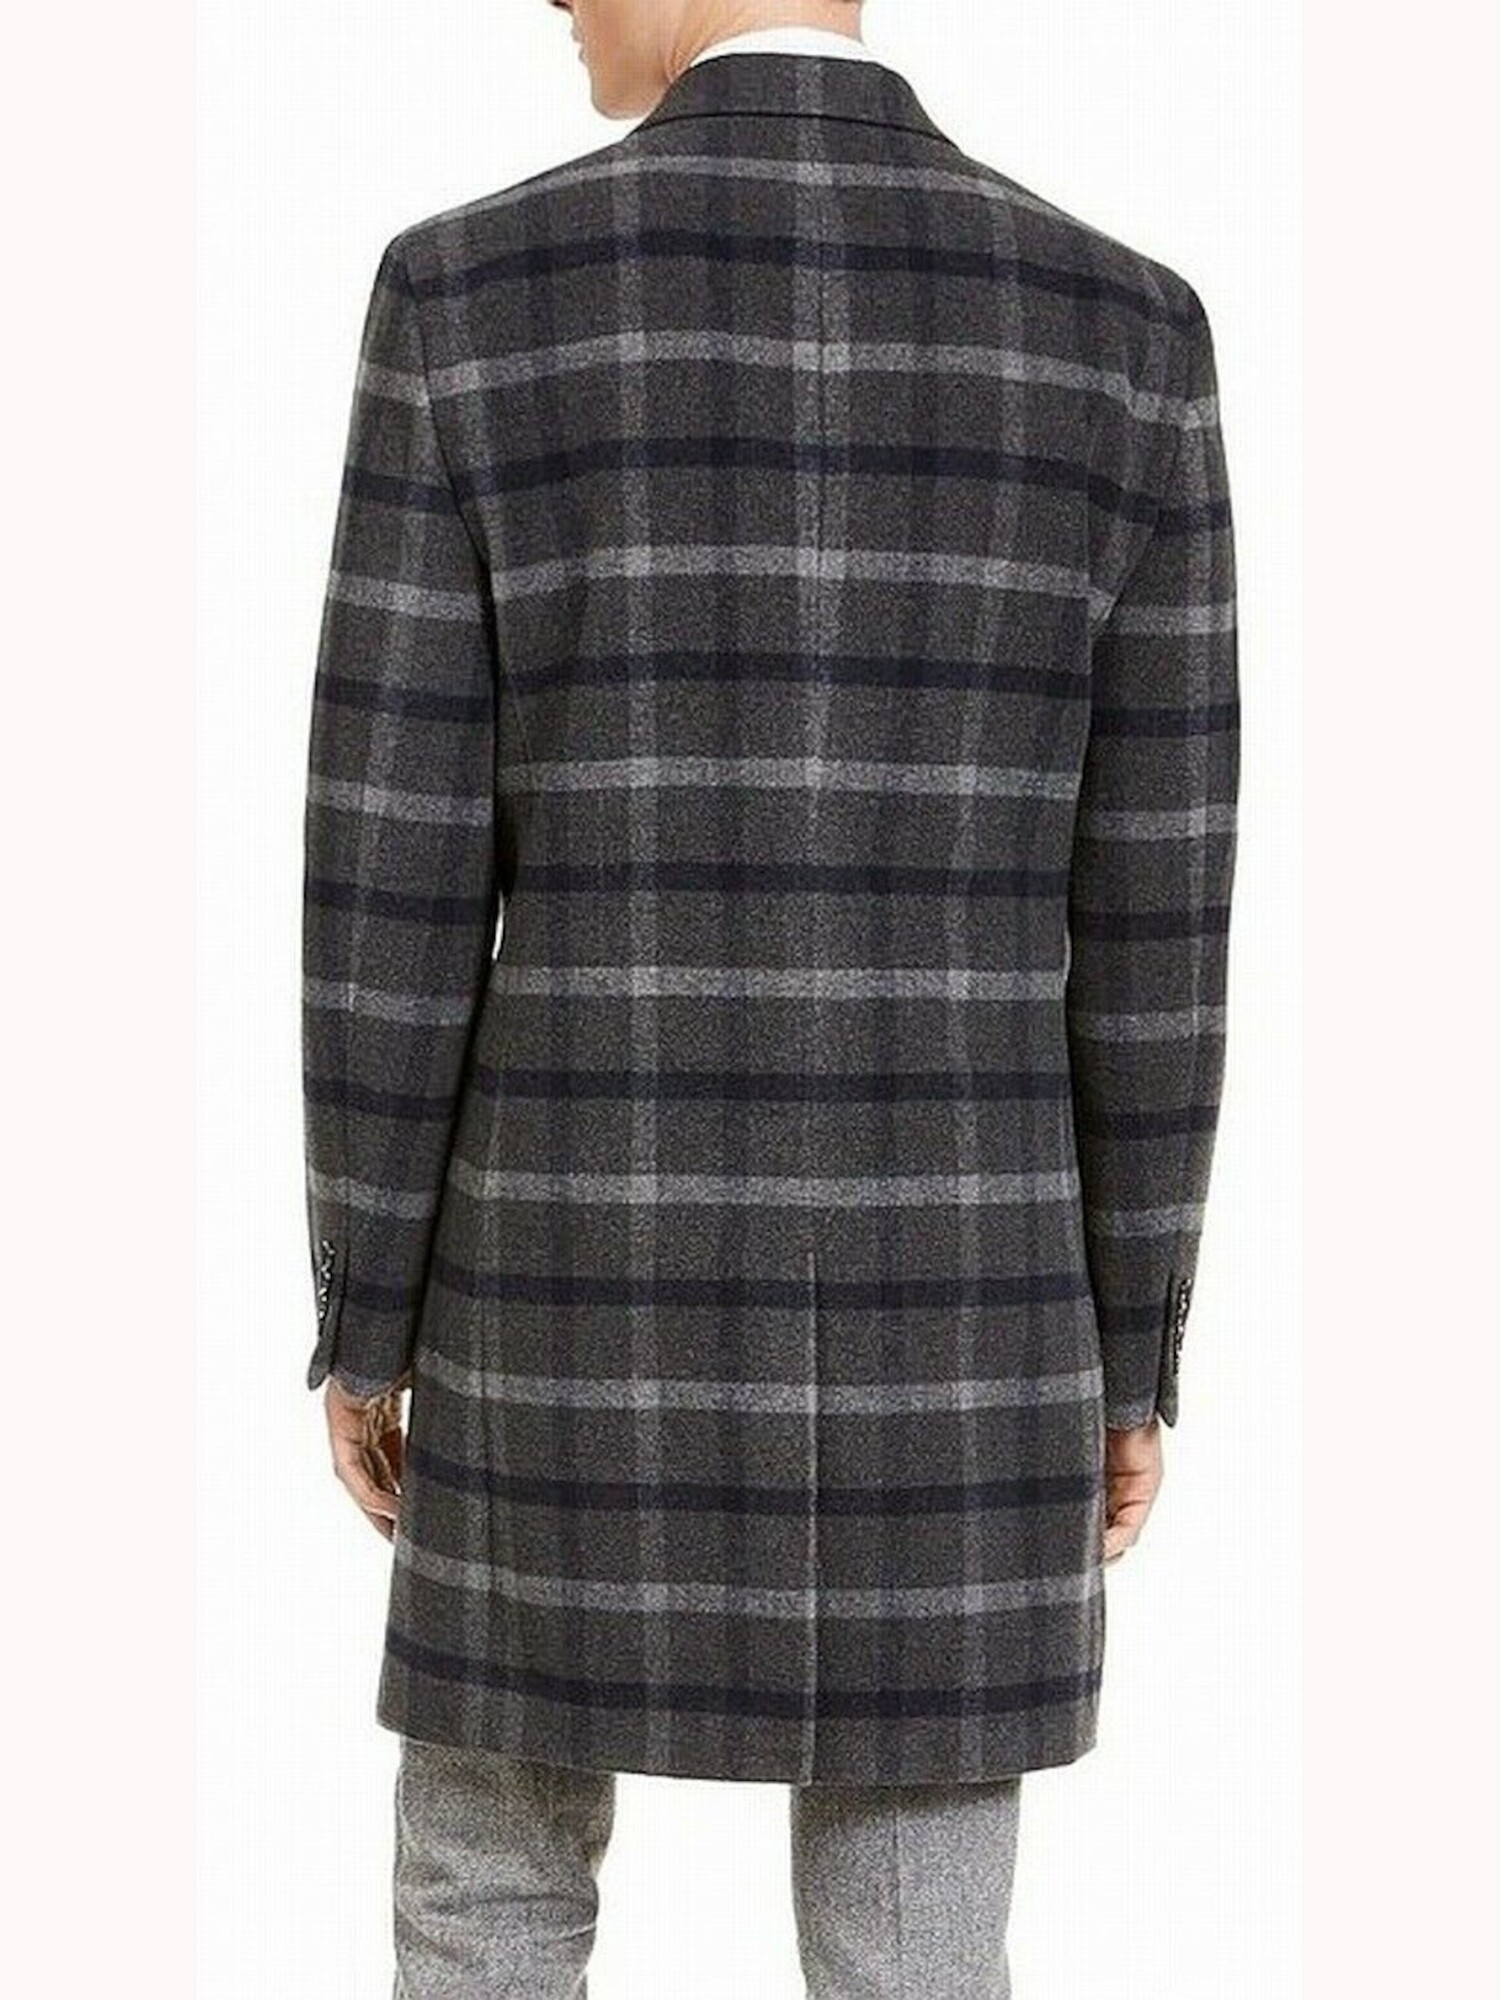 Tommy Hilfiger Mens Addison Wool Blend Modern Fit Top Coat - image 2 of 3